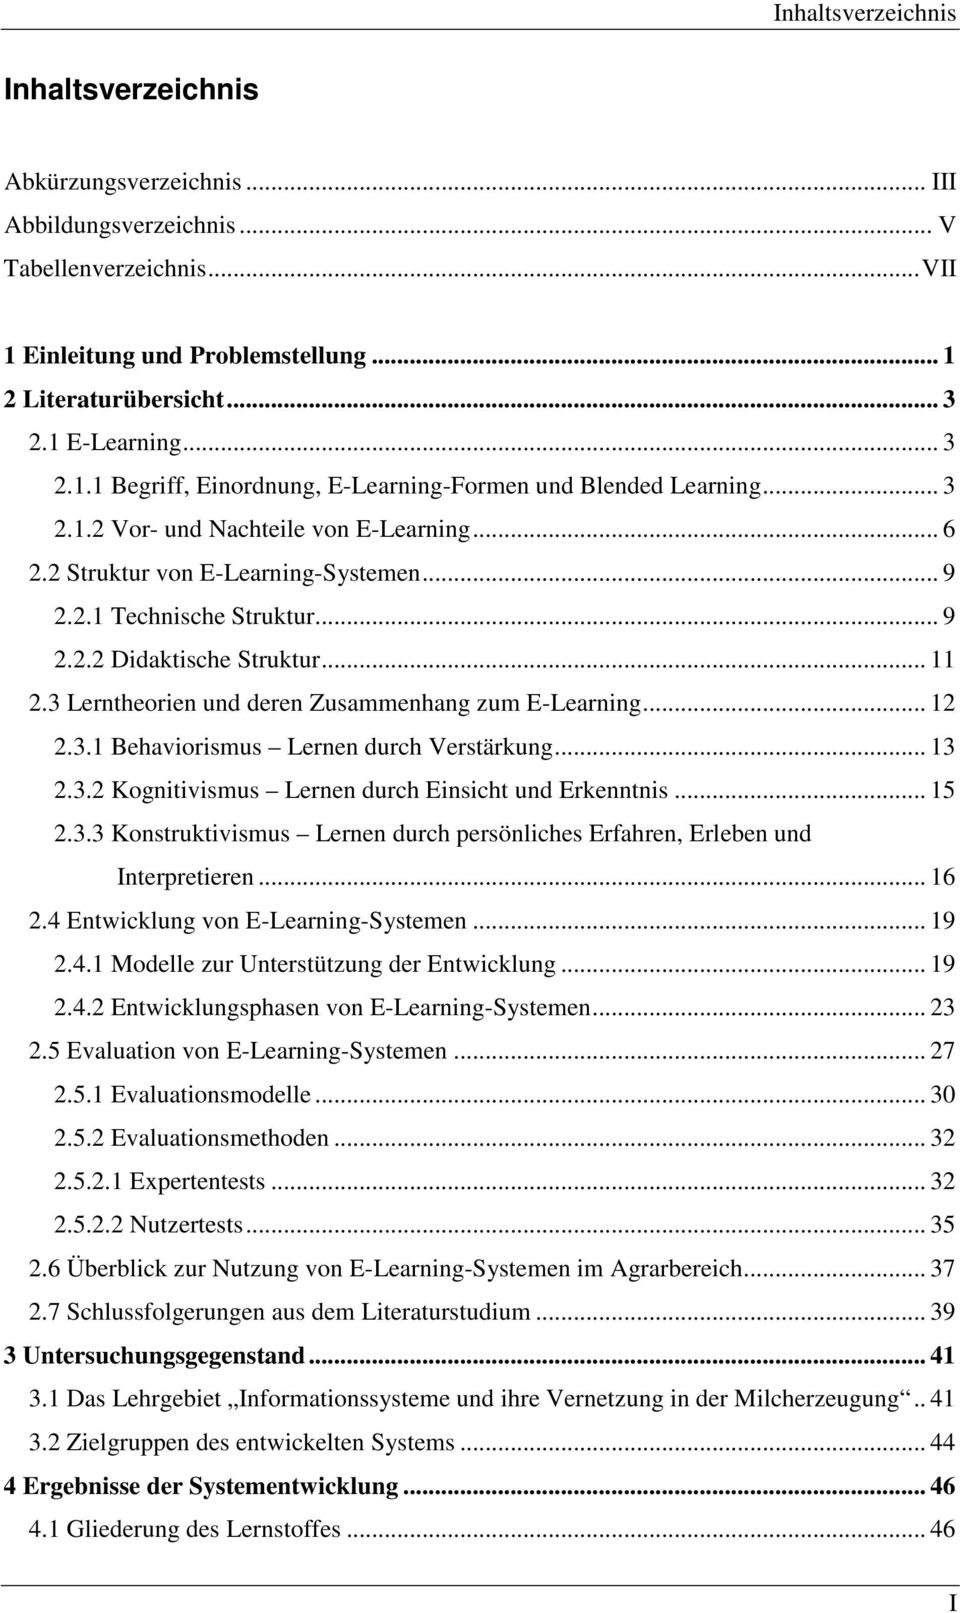 .. 11 2.3 Lerntheorien und deren Zusammenhang zum E-Learning... 12 2.3.1 Behaviorismus Lernen durch Verstärkung... 13 2.3.2 Kognitivismus Lernen durch Einsicht und Erkenntnis... 15 2.3.3 Konstruktivismus Lernen durch persönliches Erfahren, Erleben und Interpretieren.